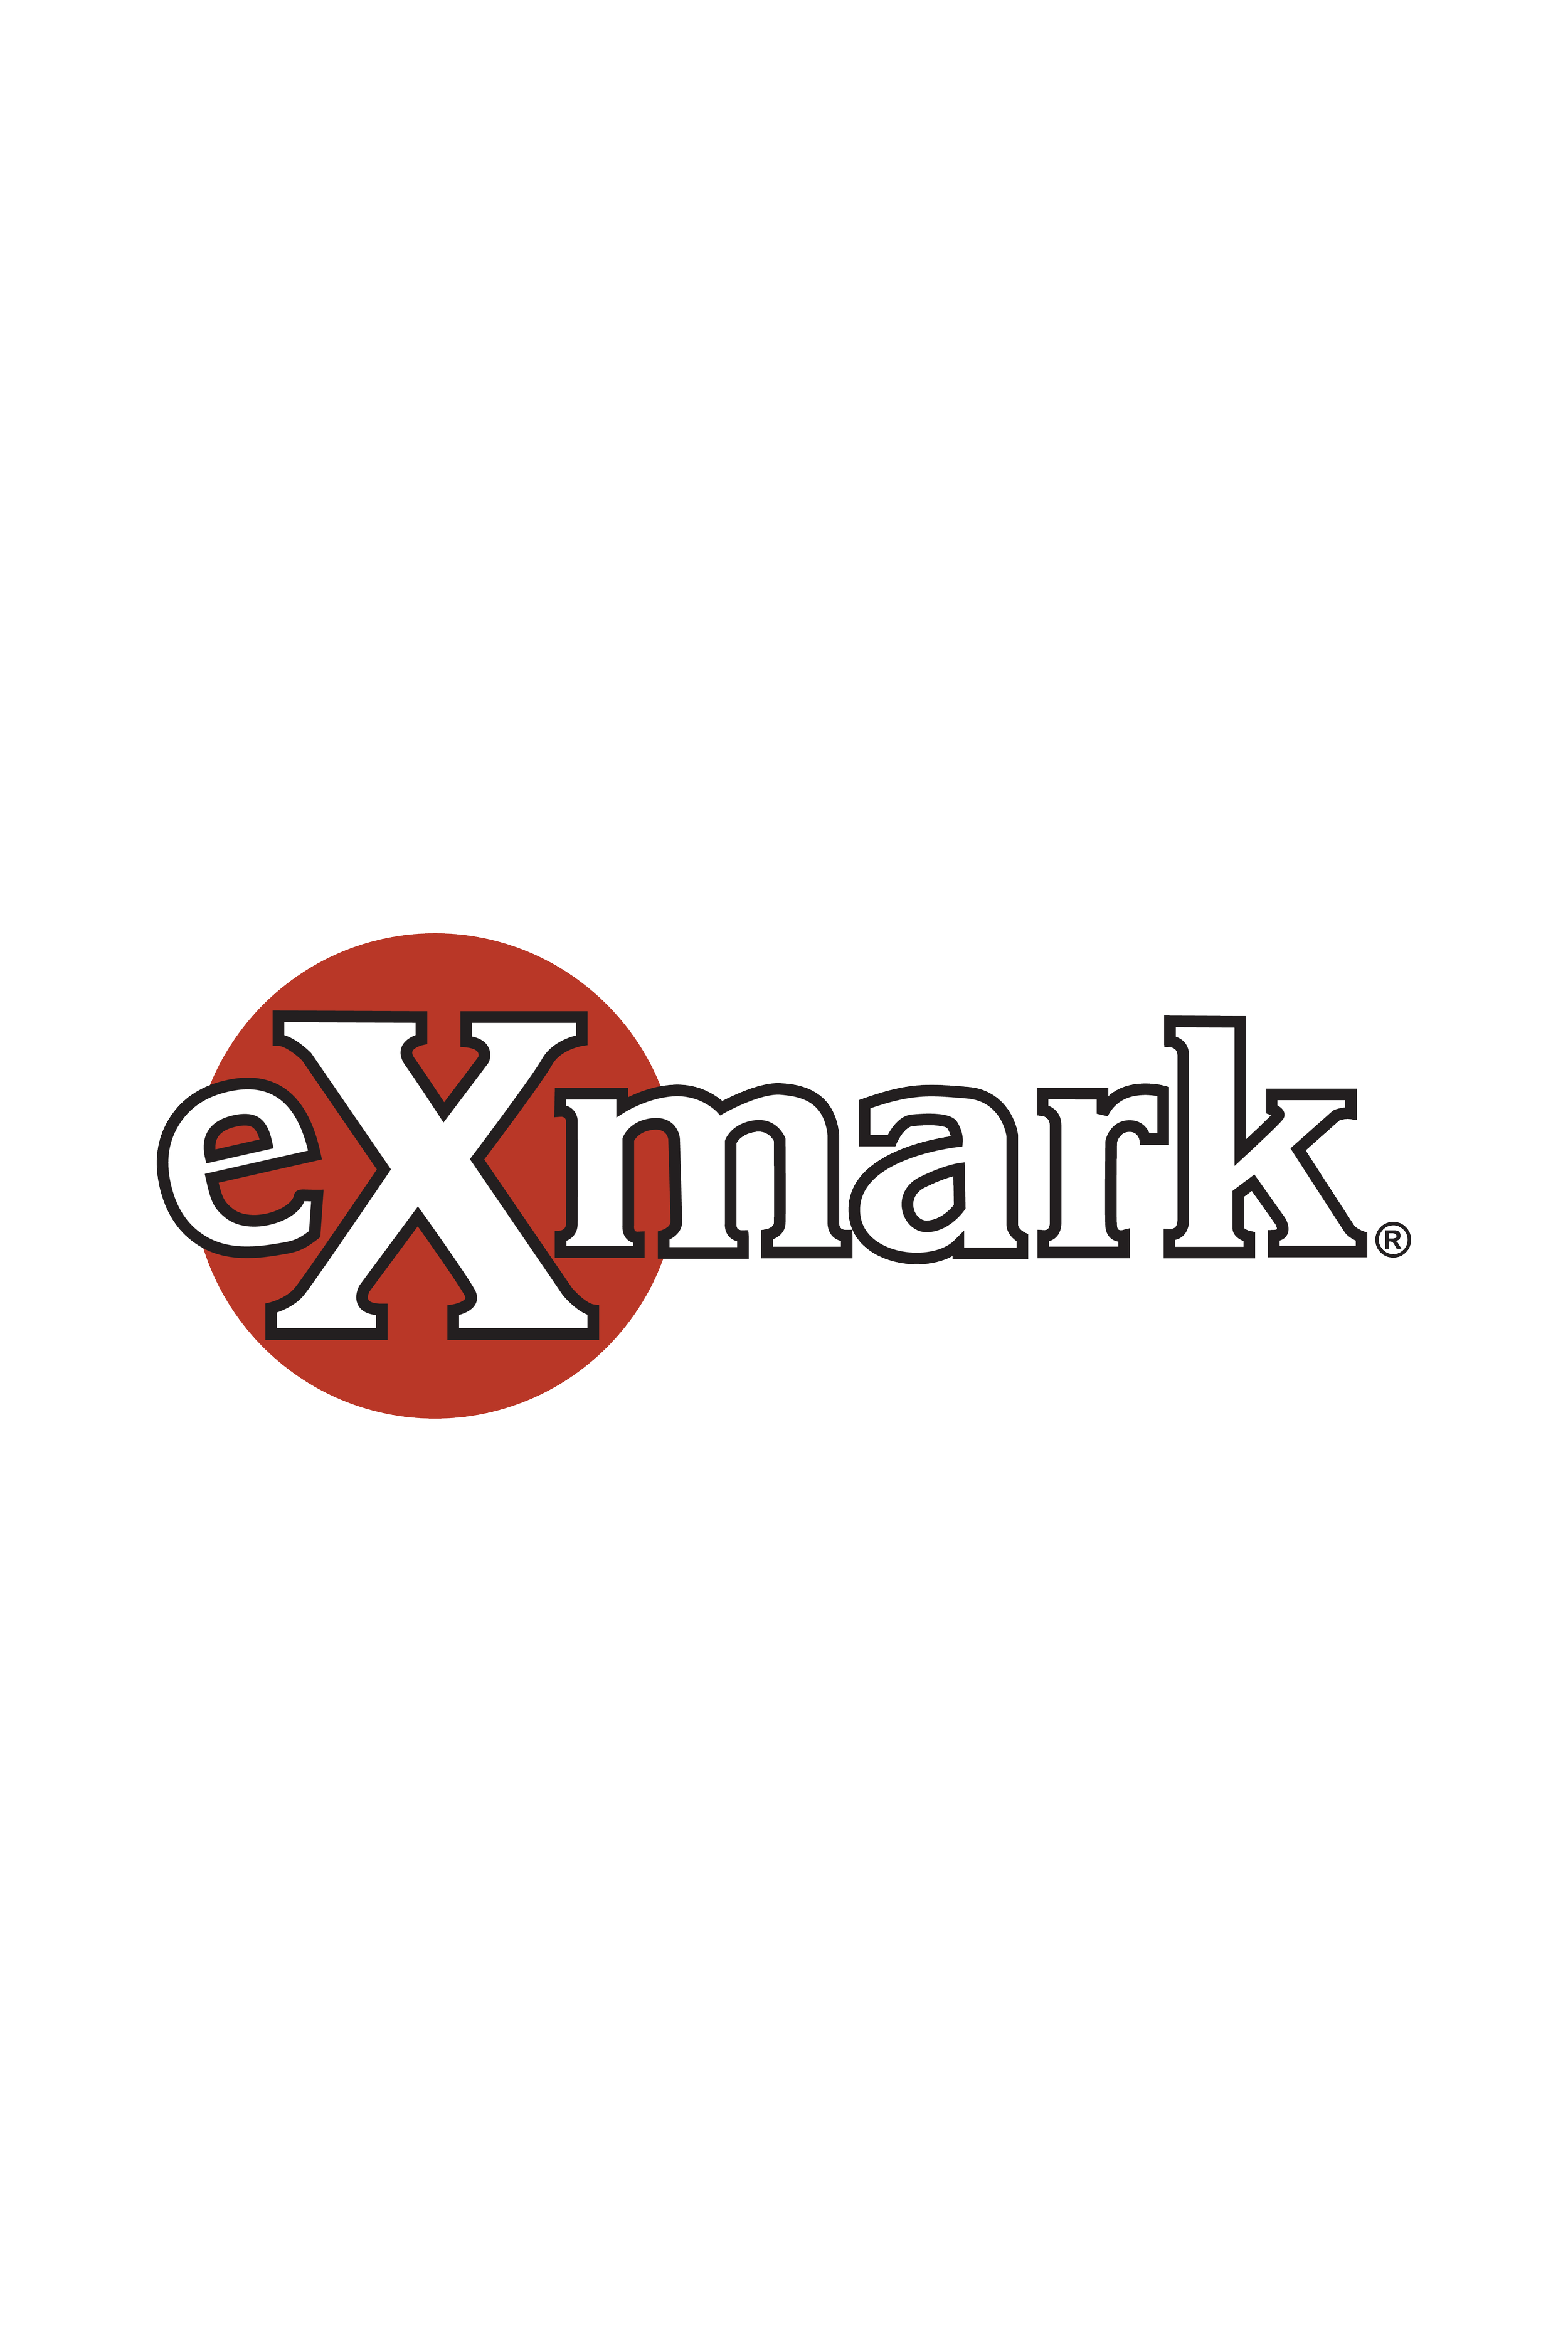 exmark